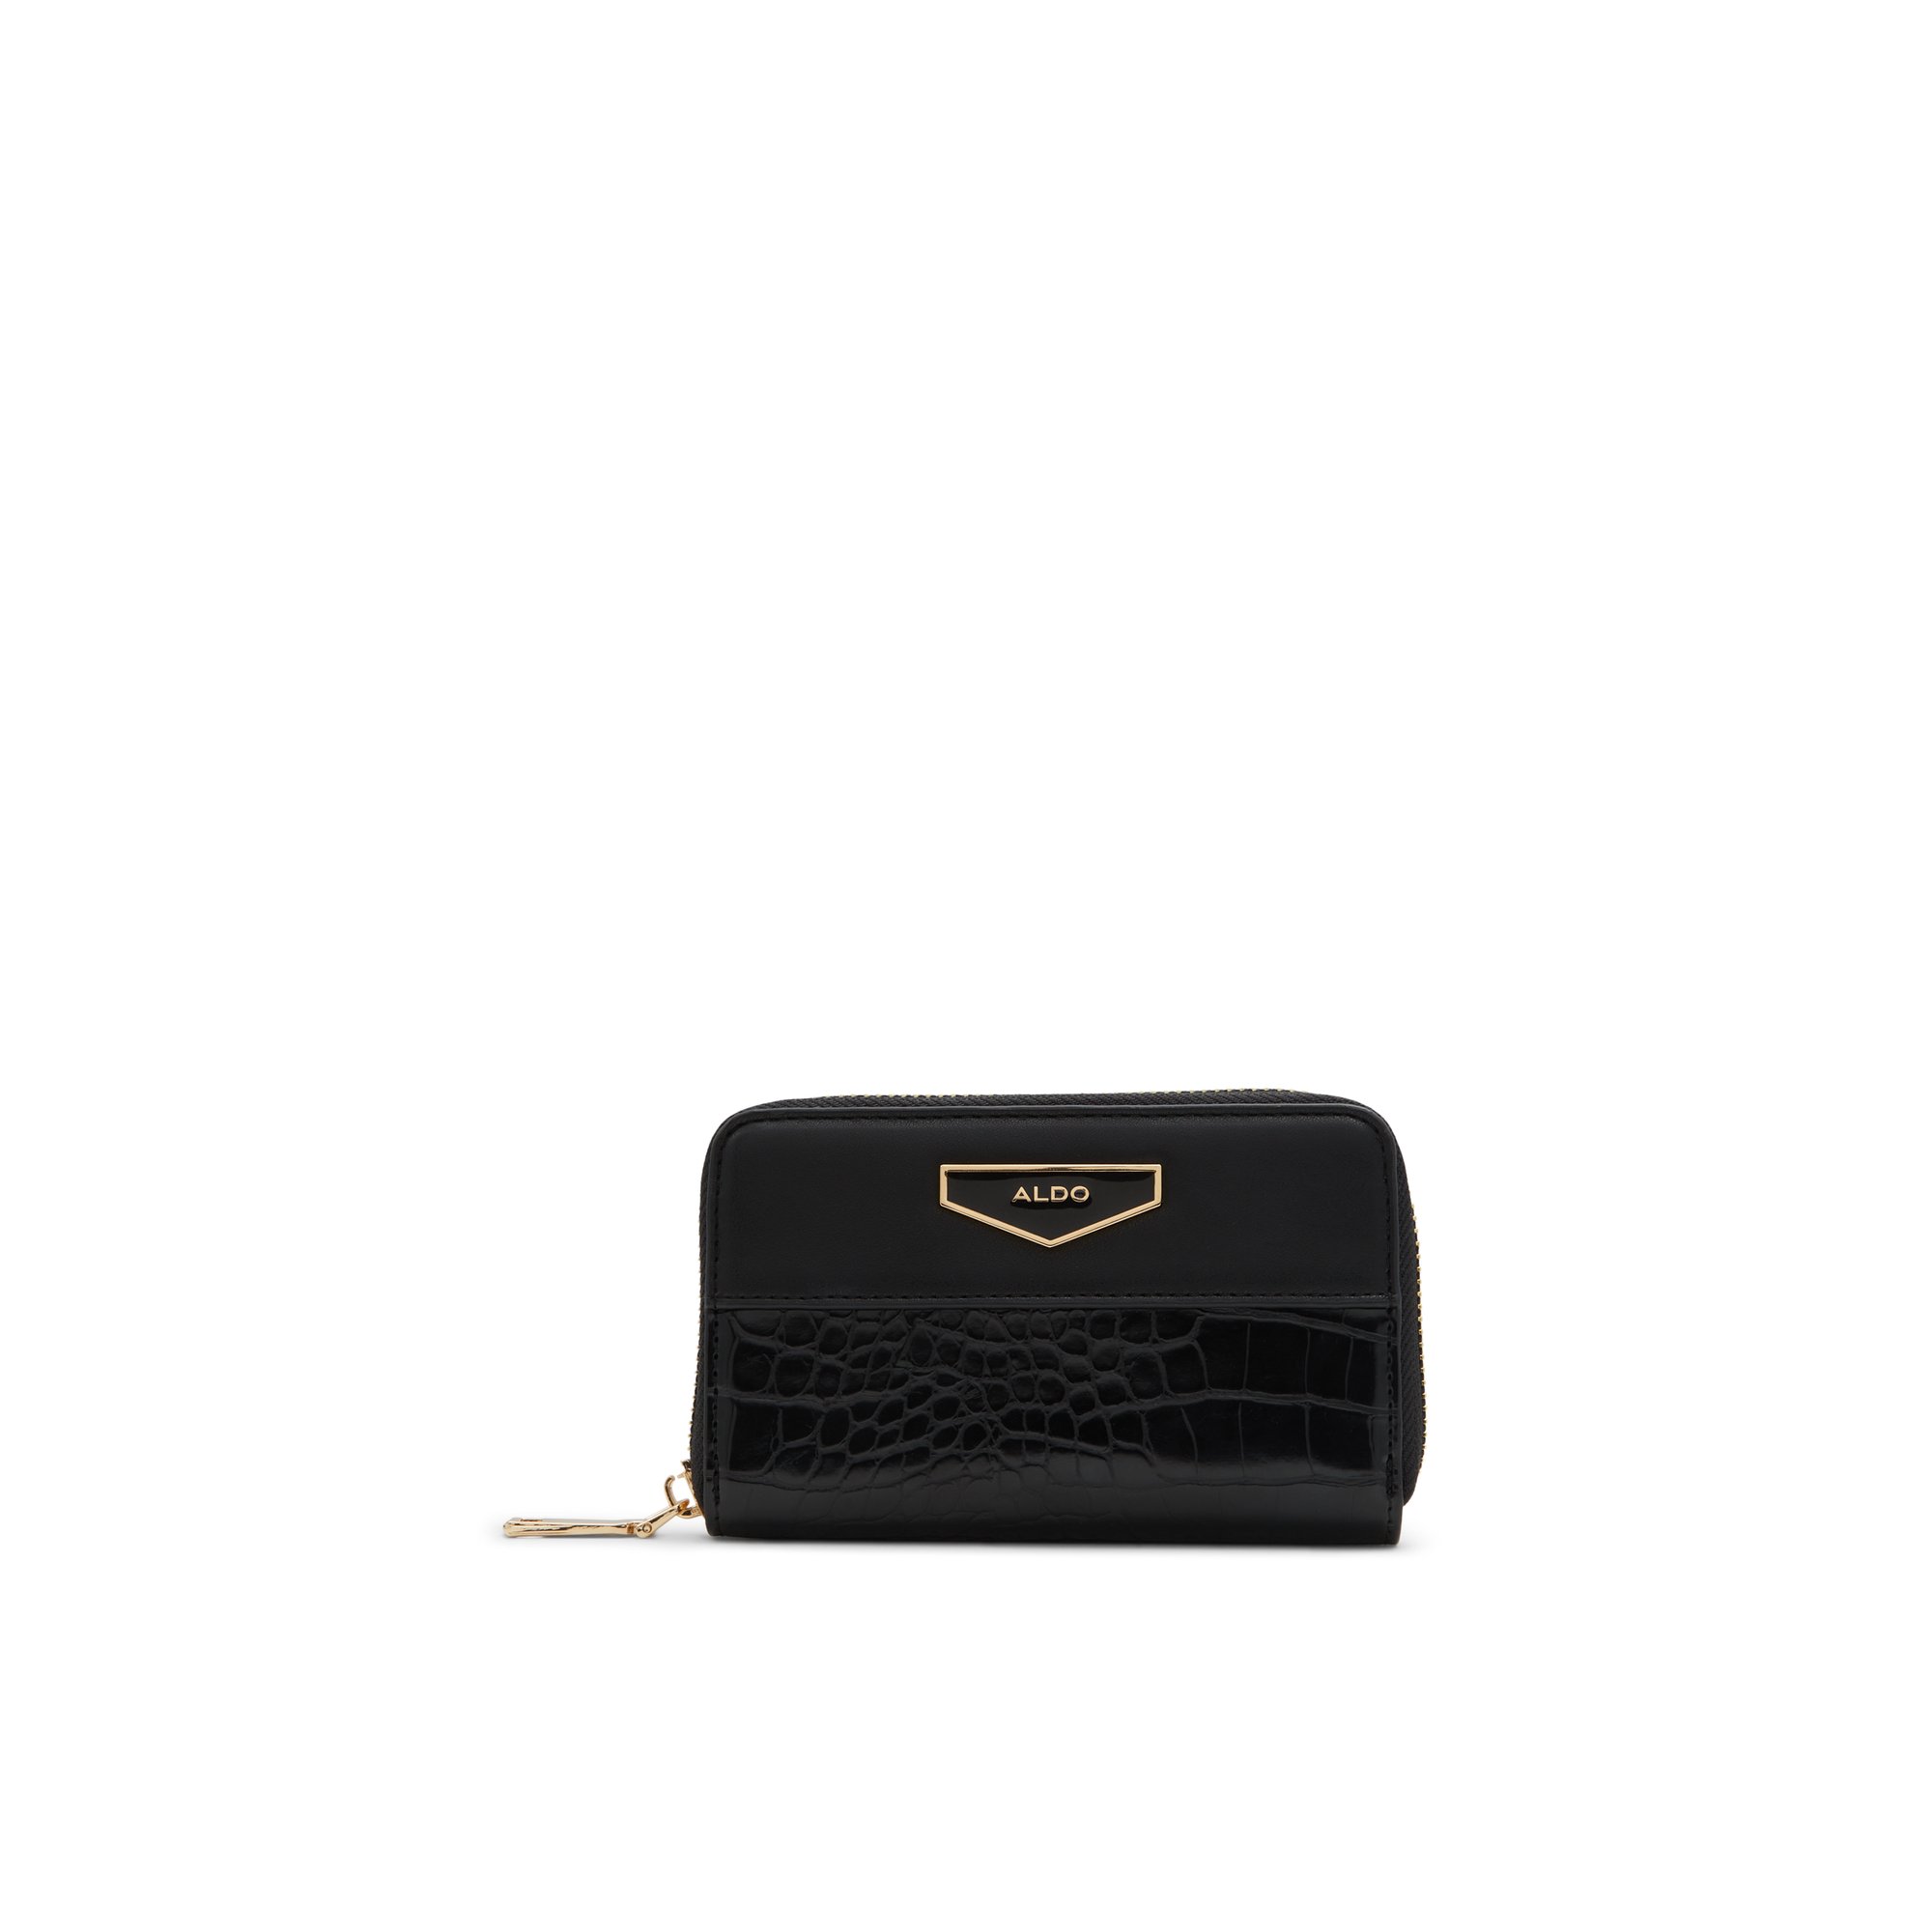 ALDO Alalendra - Women's Handbags Wallets - Black